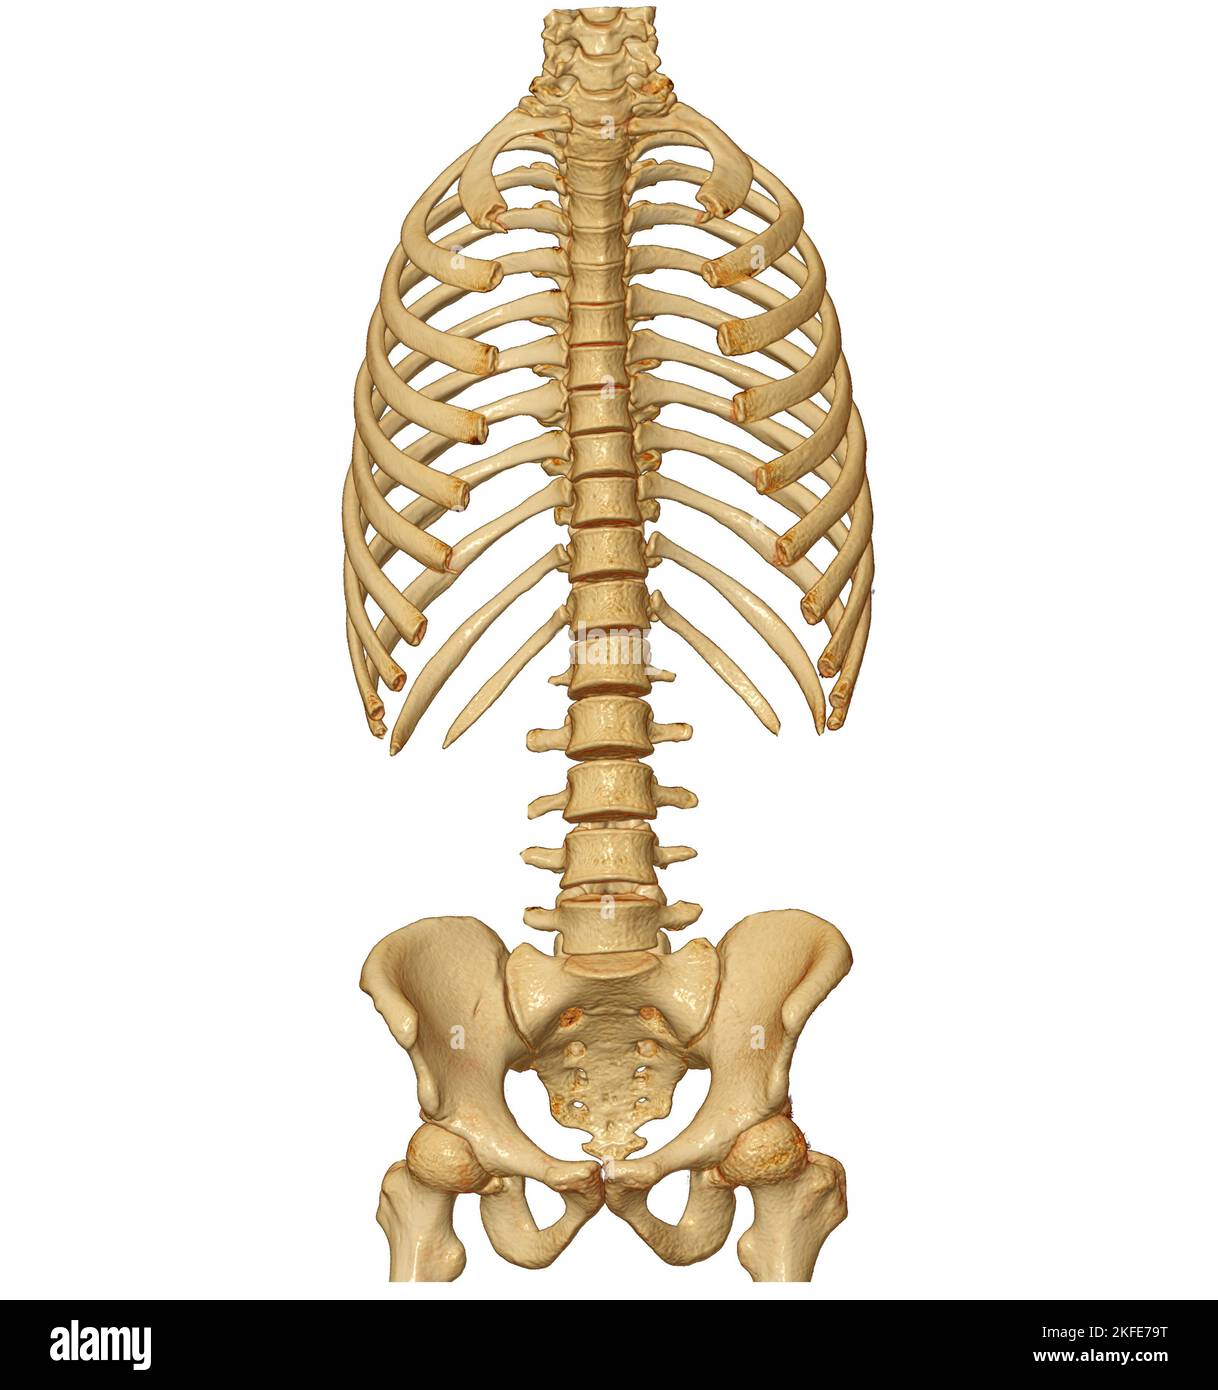 CT-Scan der gesamten Wirbelsäule 3D mit Darstellung der Profilwirbelsäule. Muskel-Skelett-System Menschlicher Körper. Struktur Der Wirbelsäule. Untersuchung von Problemerkrankungen und Trea Stockfoto